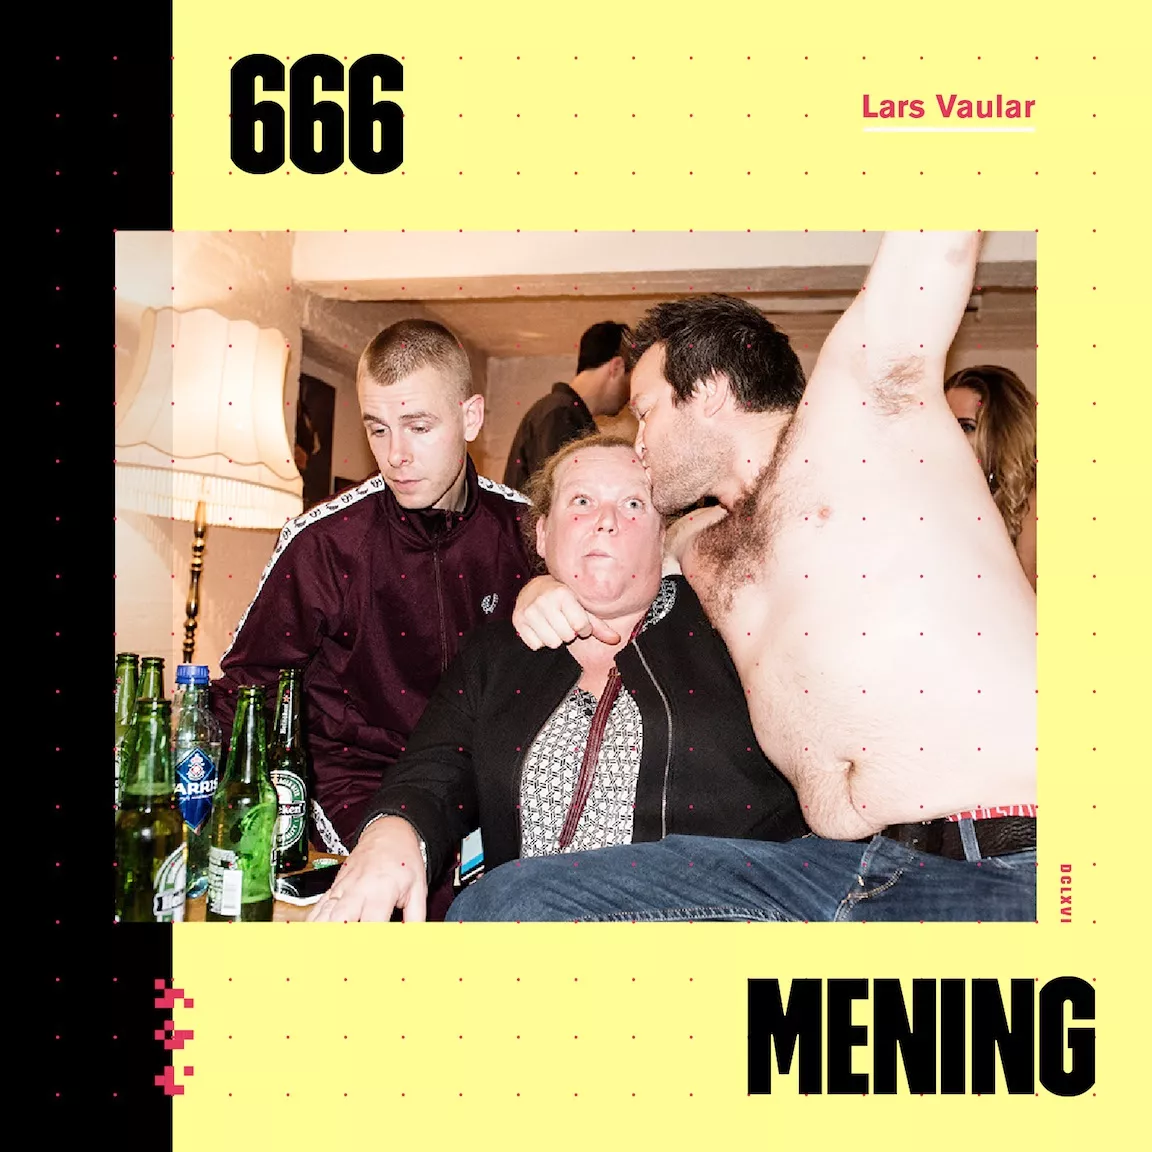 666 MENING - Lars Vaular